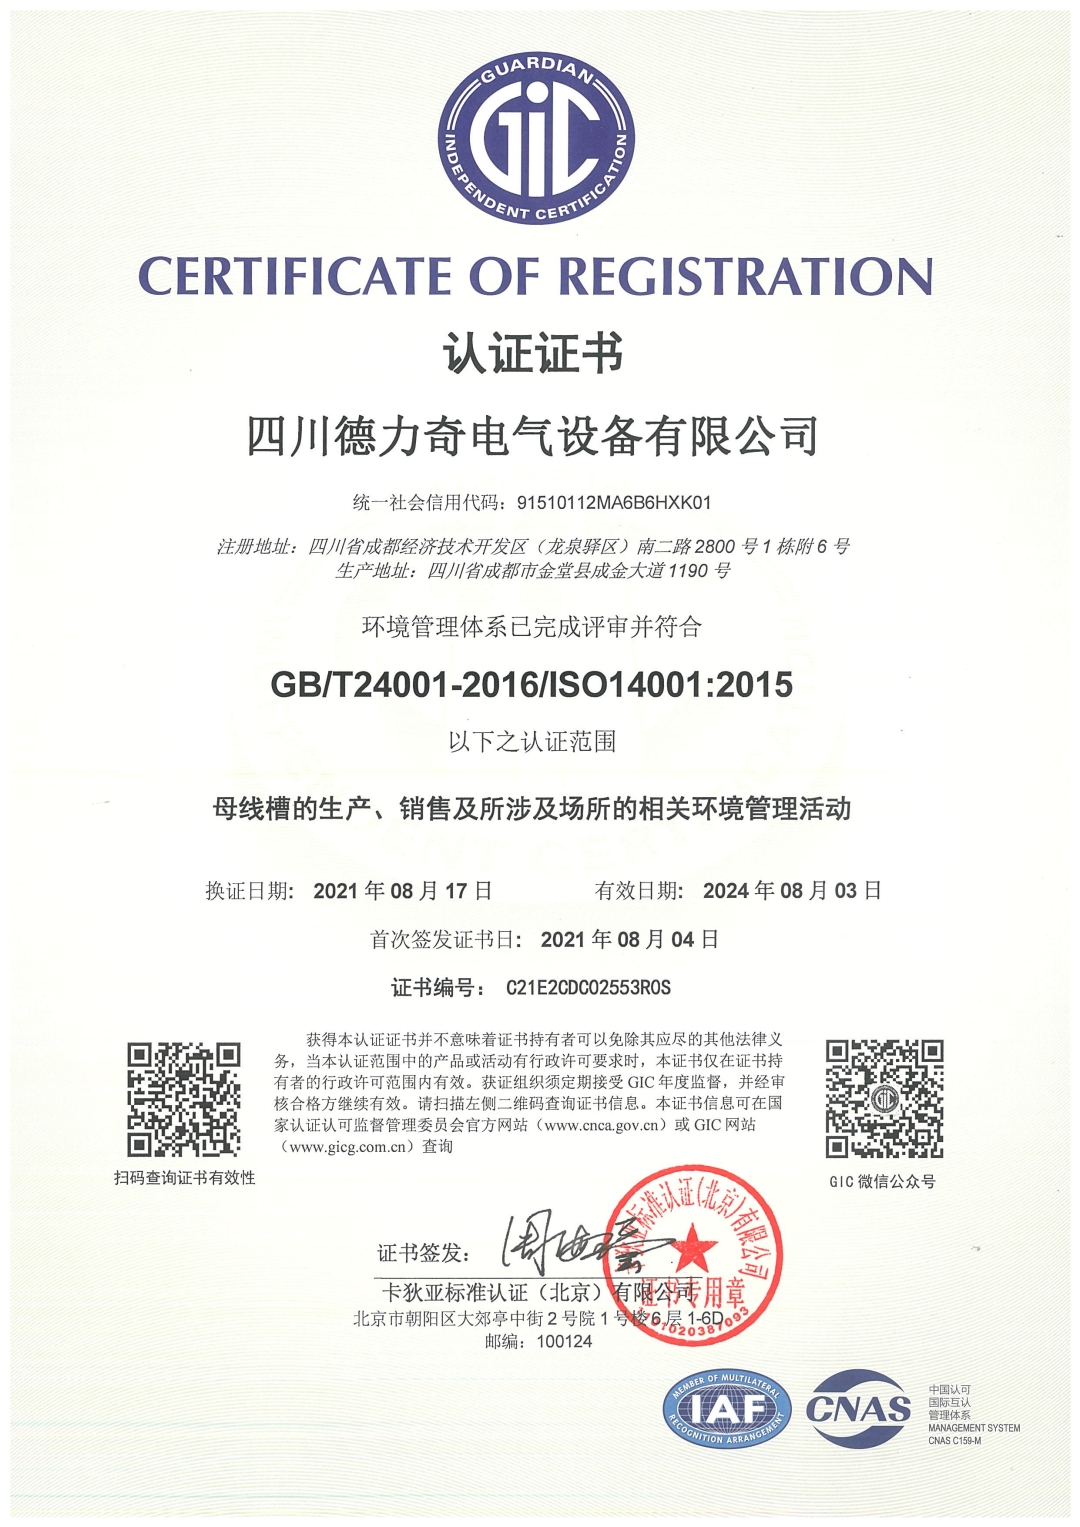 恭喜四川德力奇电气设备有限公司顺利通过ISO14001质量体系认证证书